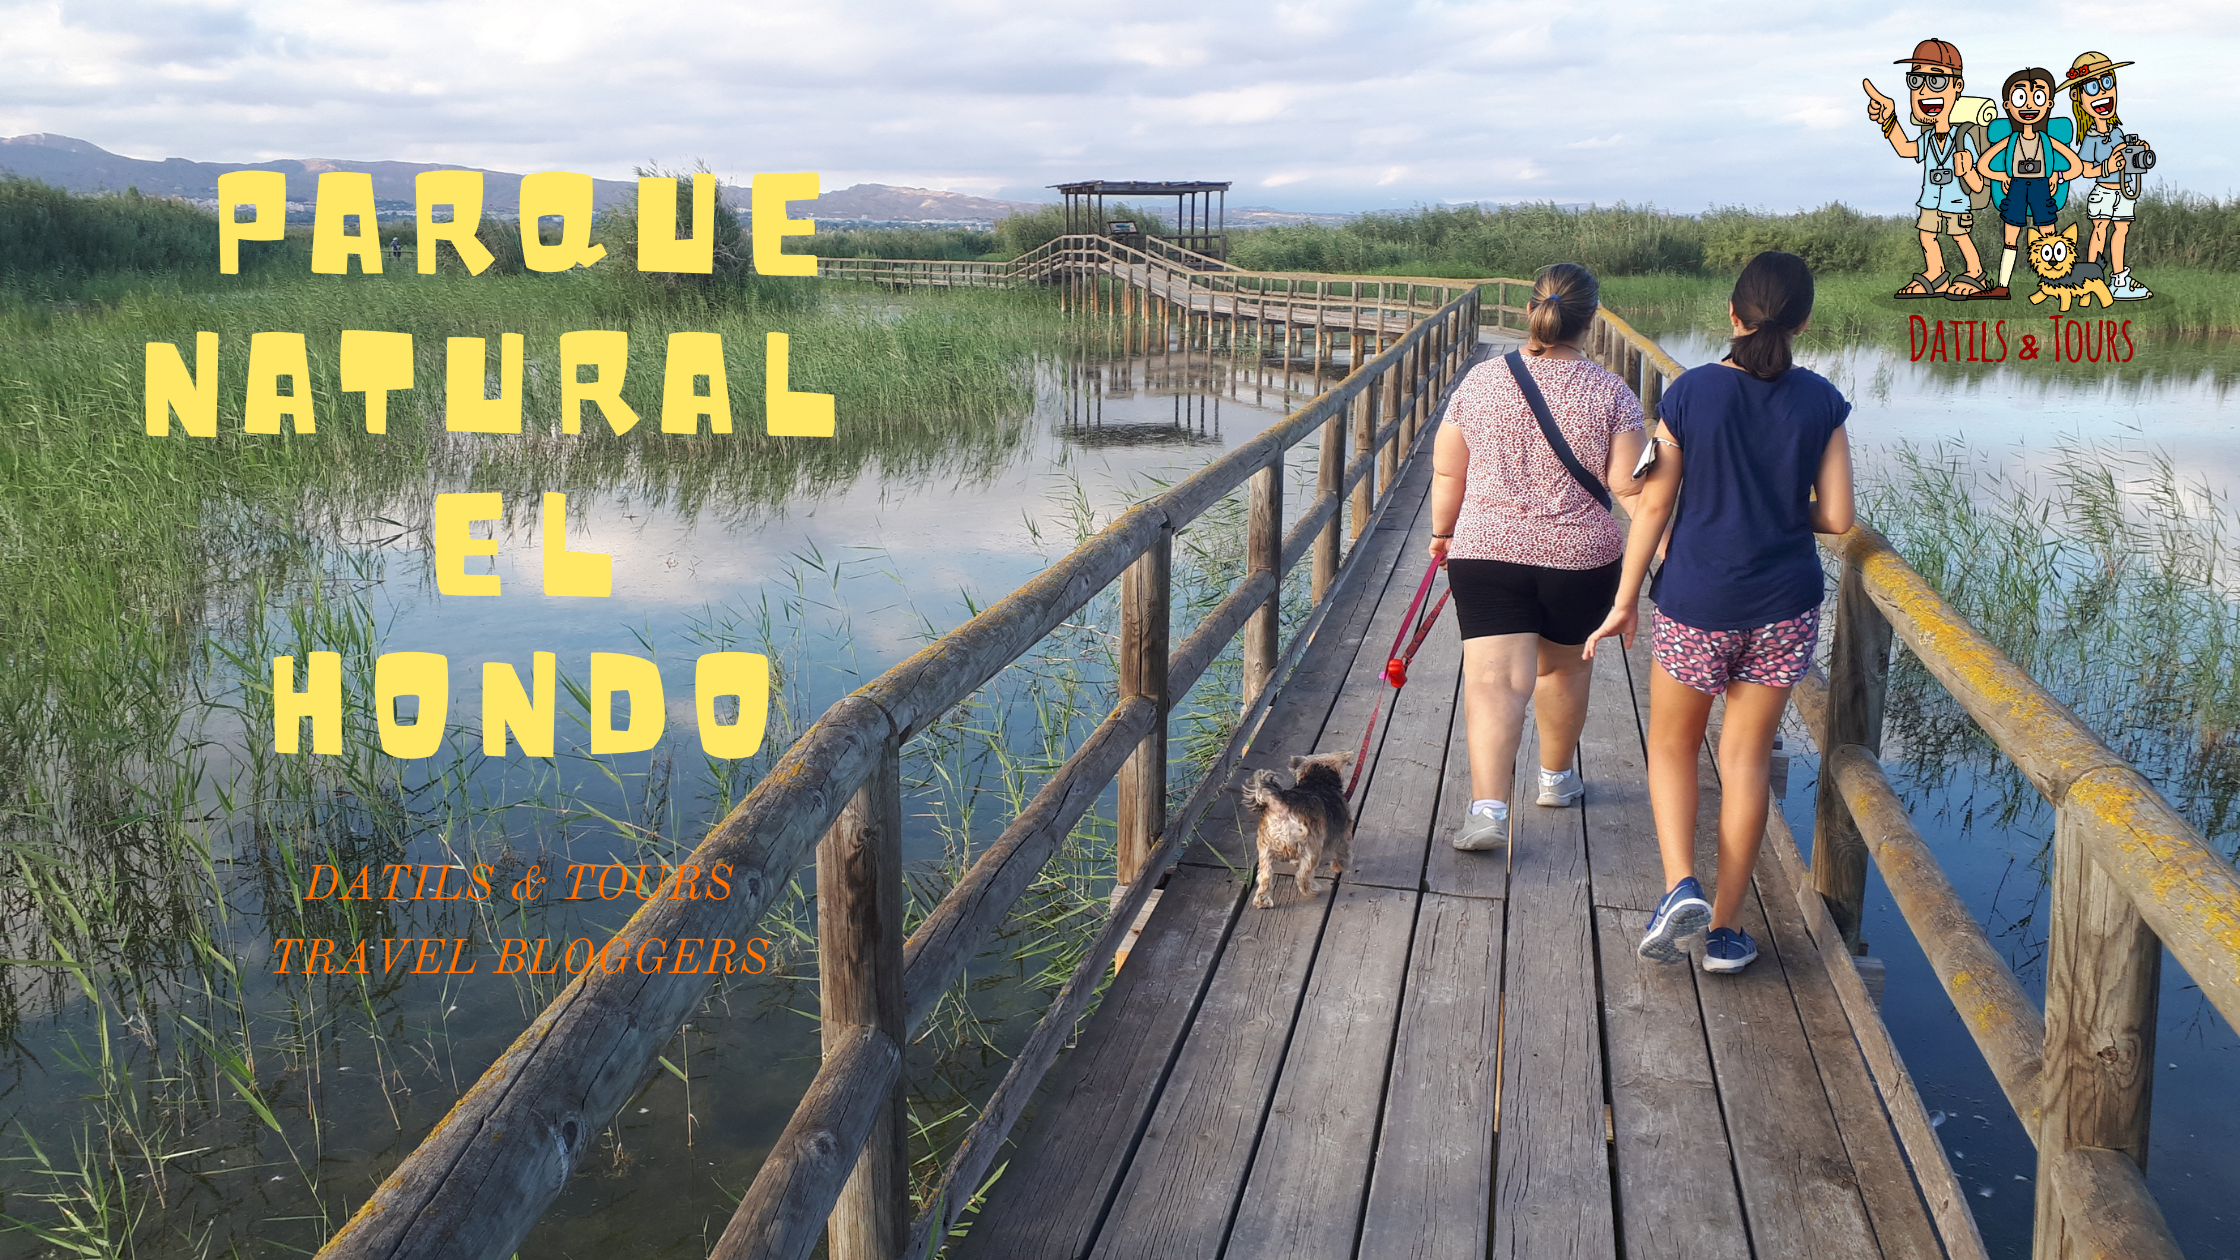 Parque Natural de El Hondo